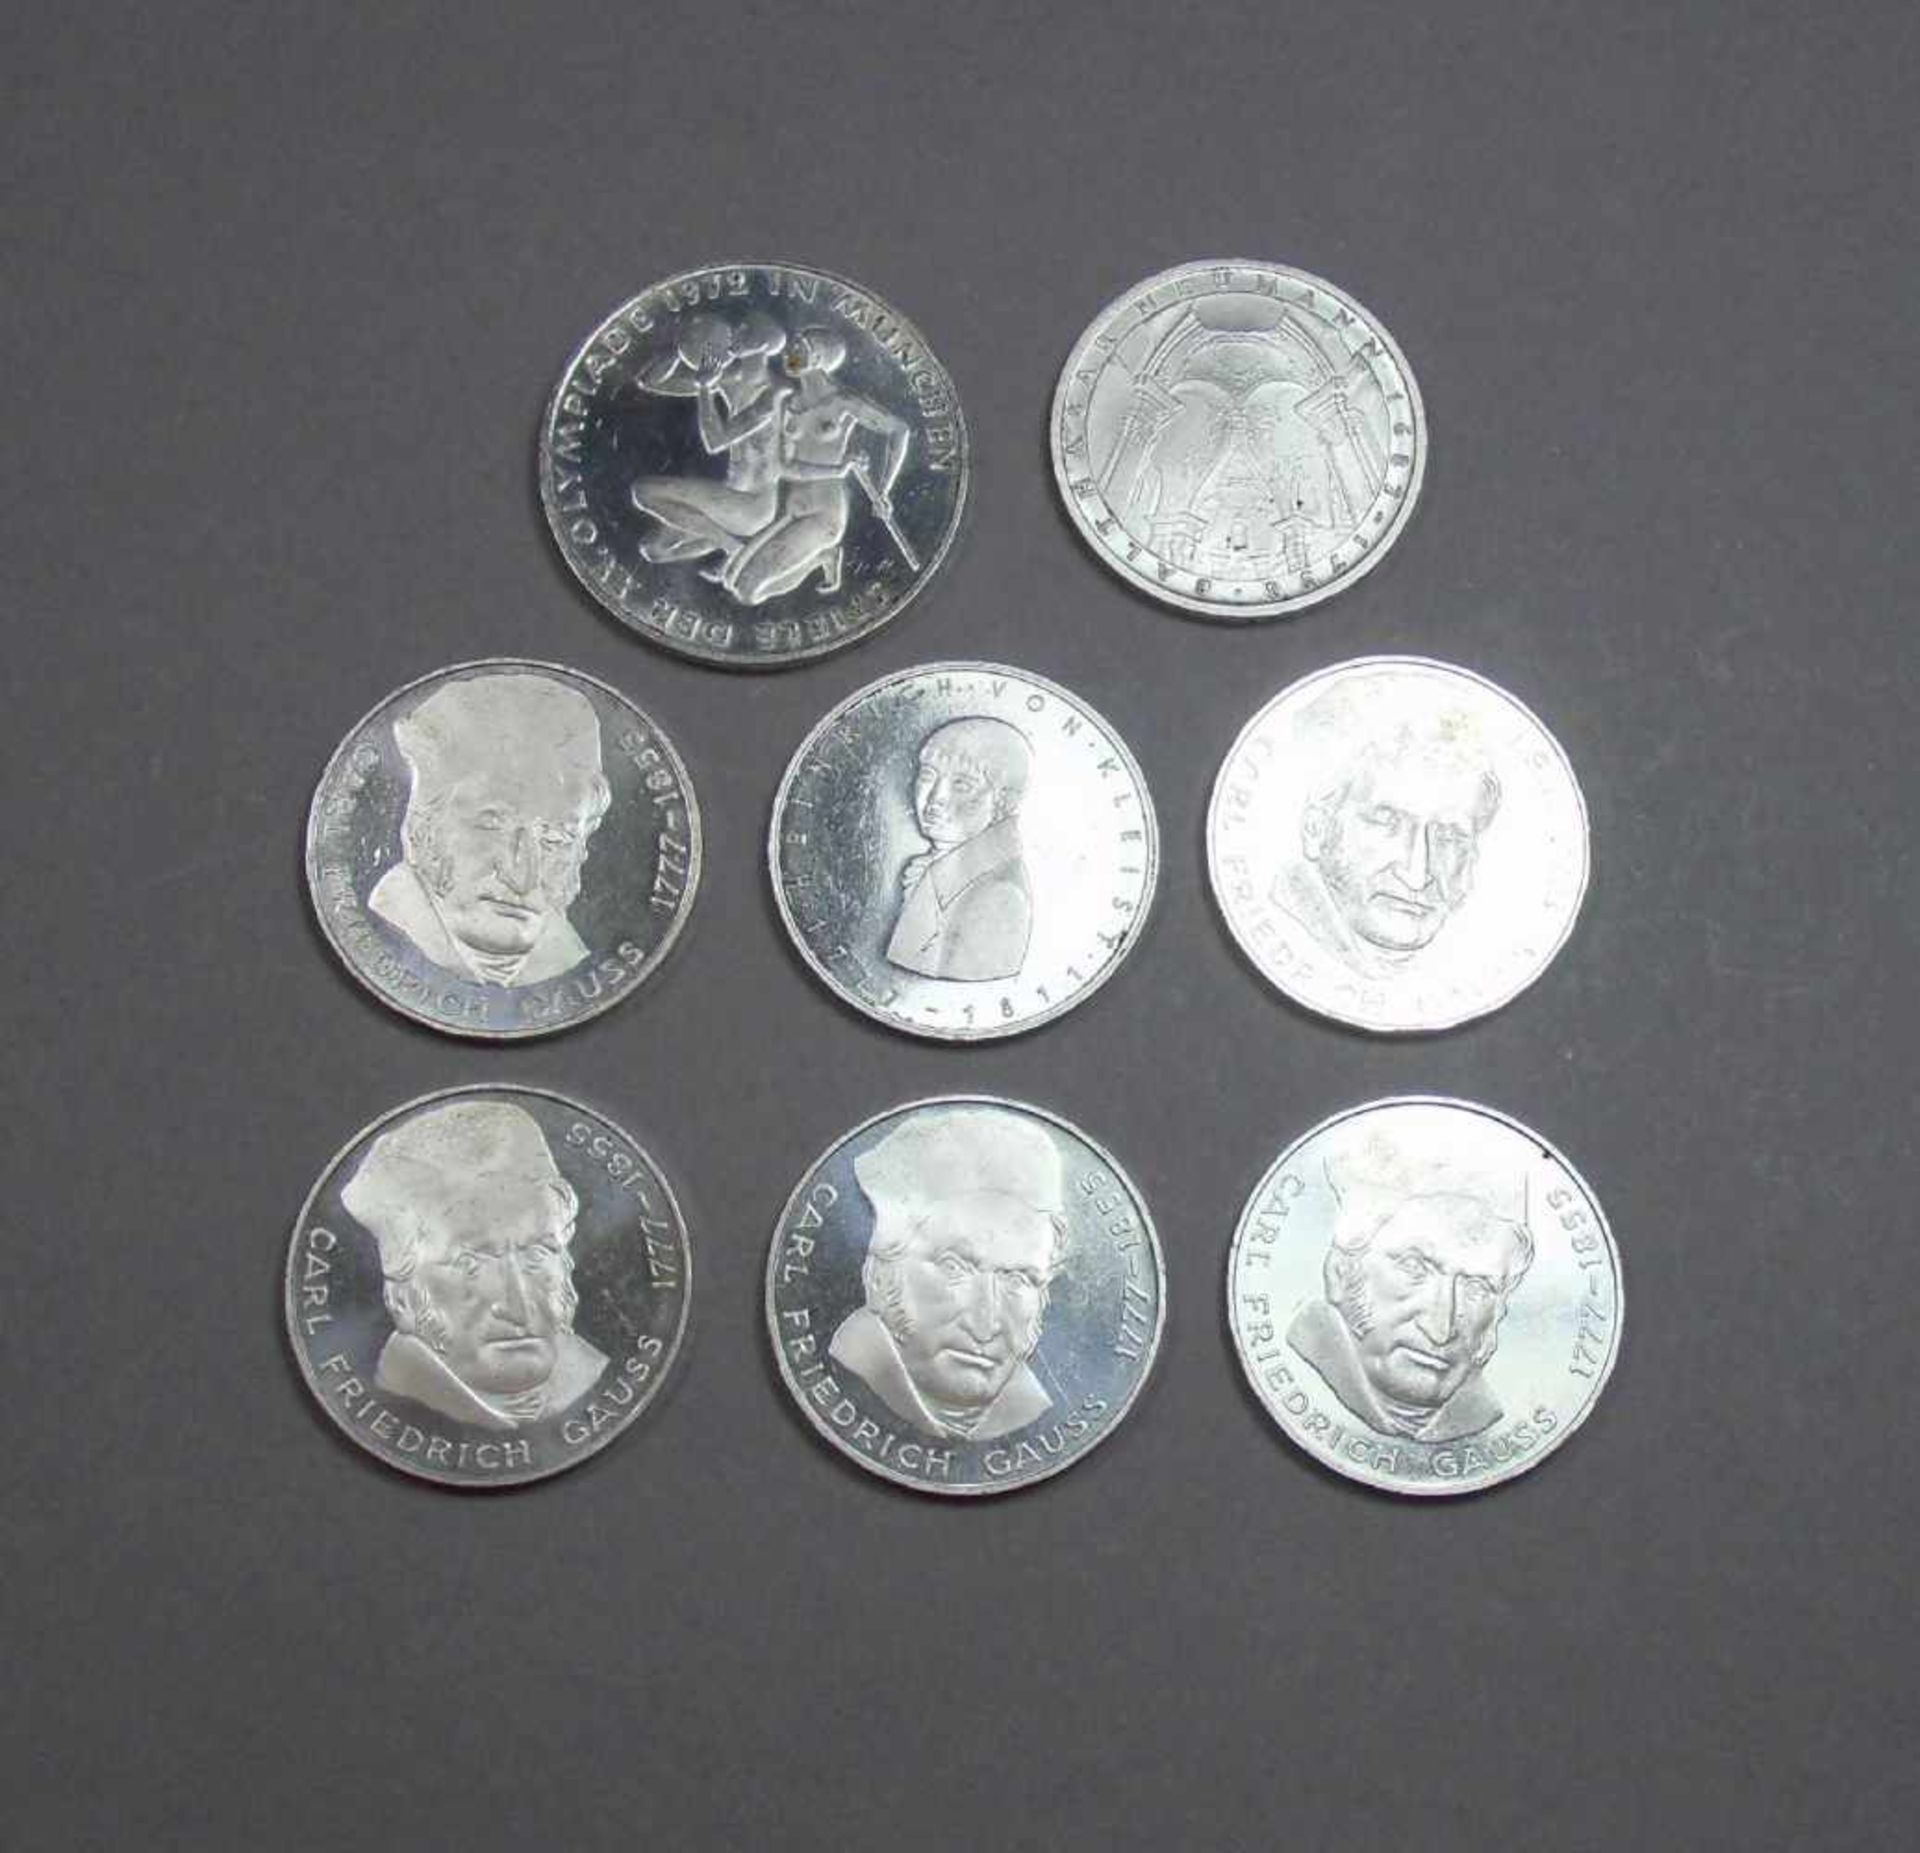 KONVOLUT MÜNZEN: 1 x 10 DEUTSCHE MARK und 7 x 5 DEUTSCHE MARK, jeweils aus 625er Silber, - Image 2 of 2